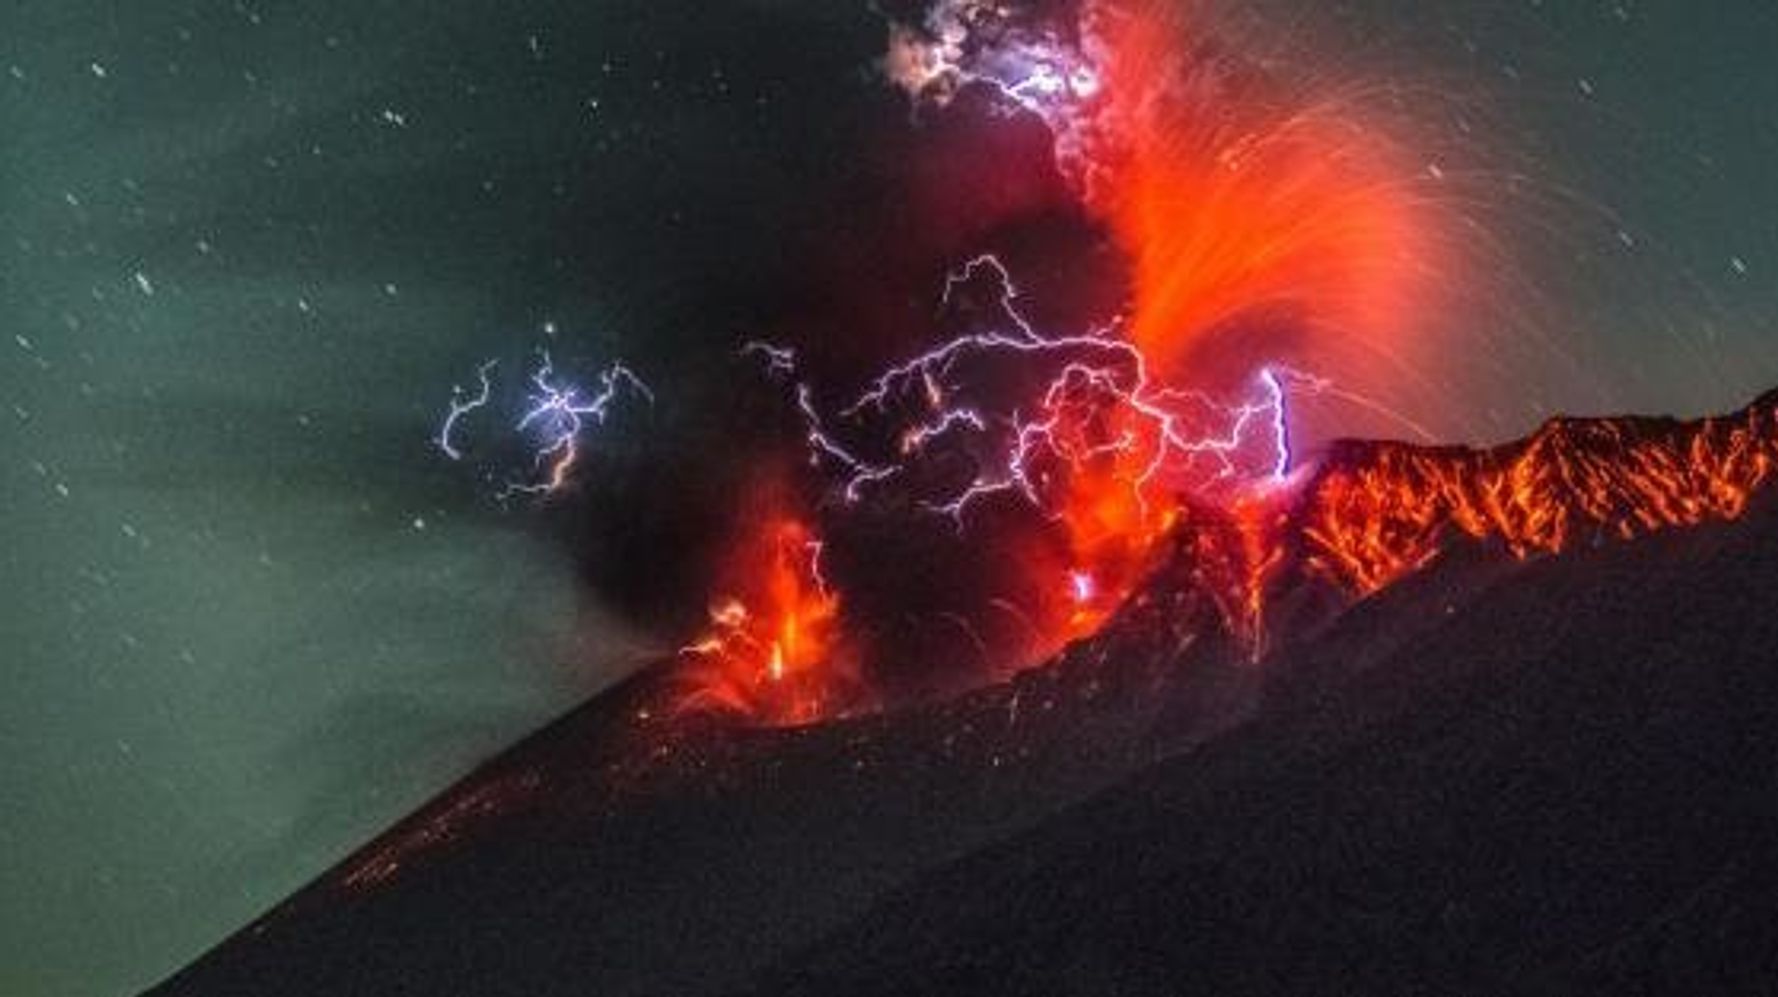 鹿児島 桜島 夜の噴火を捉えた写真が神秘的 ハフポスト News